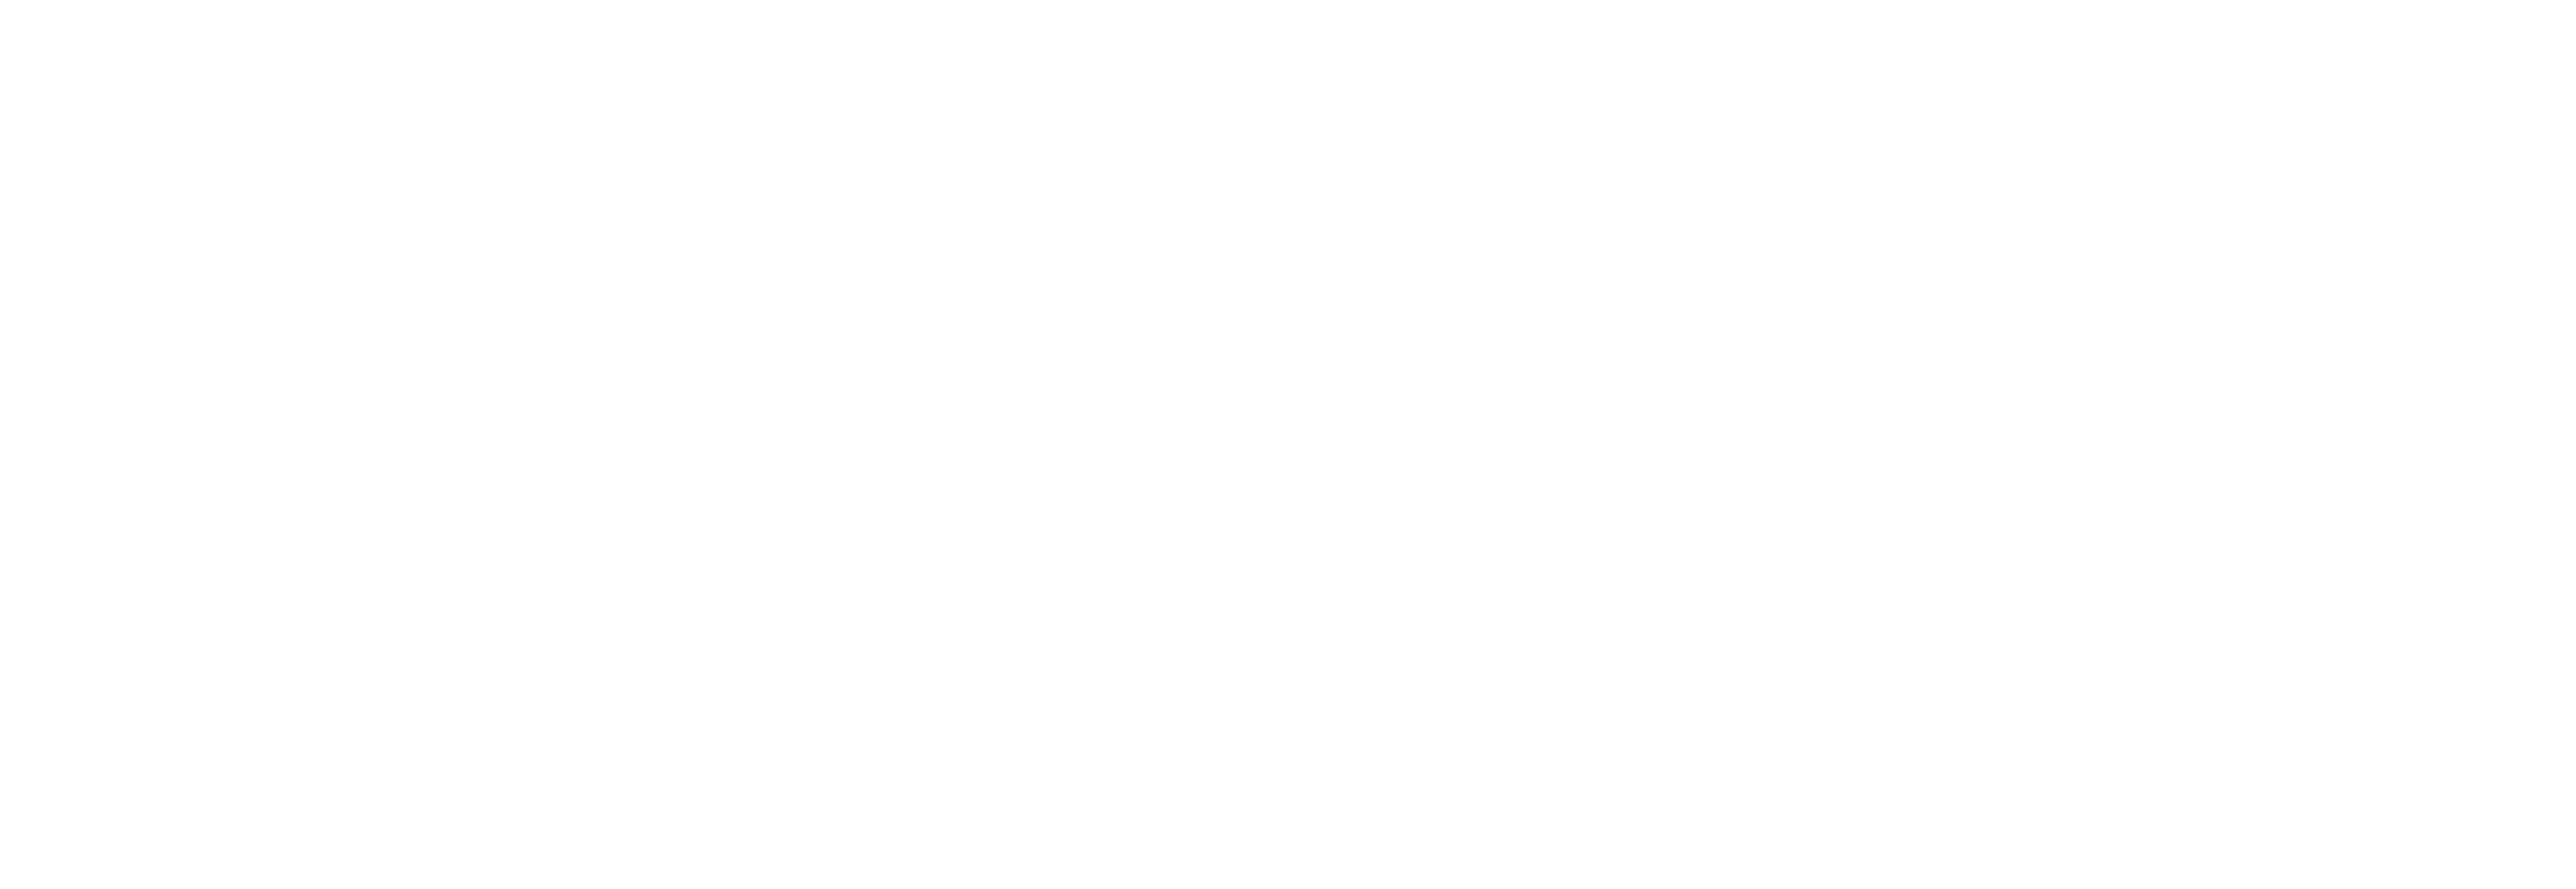 Blood Moon Apocalypse